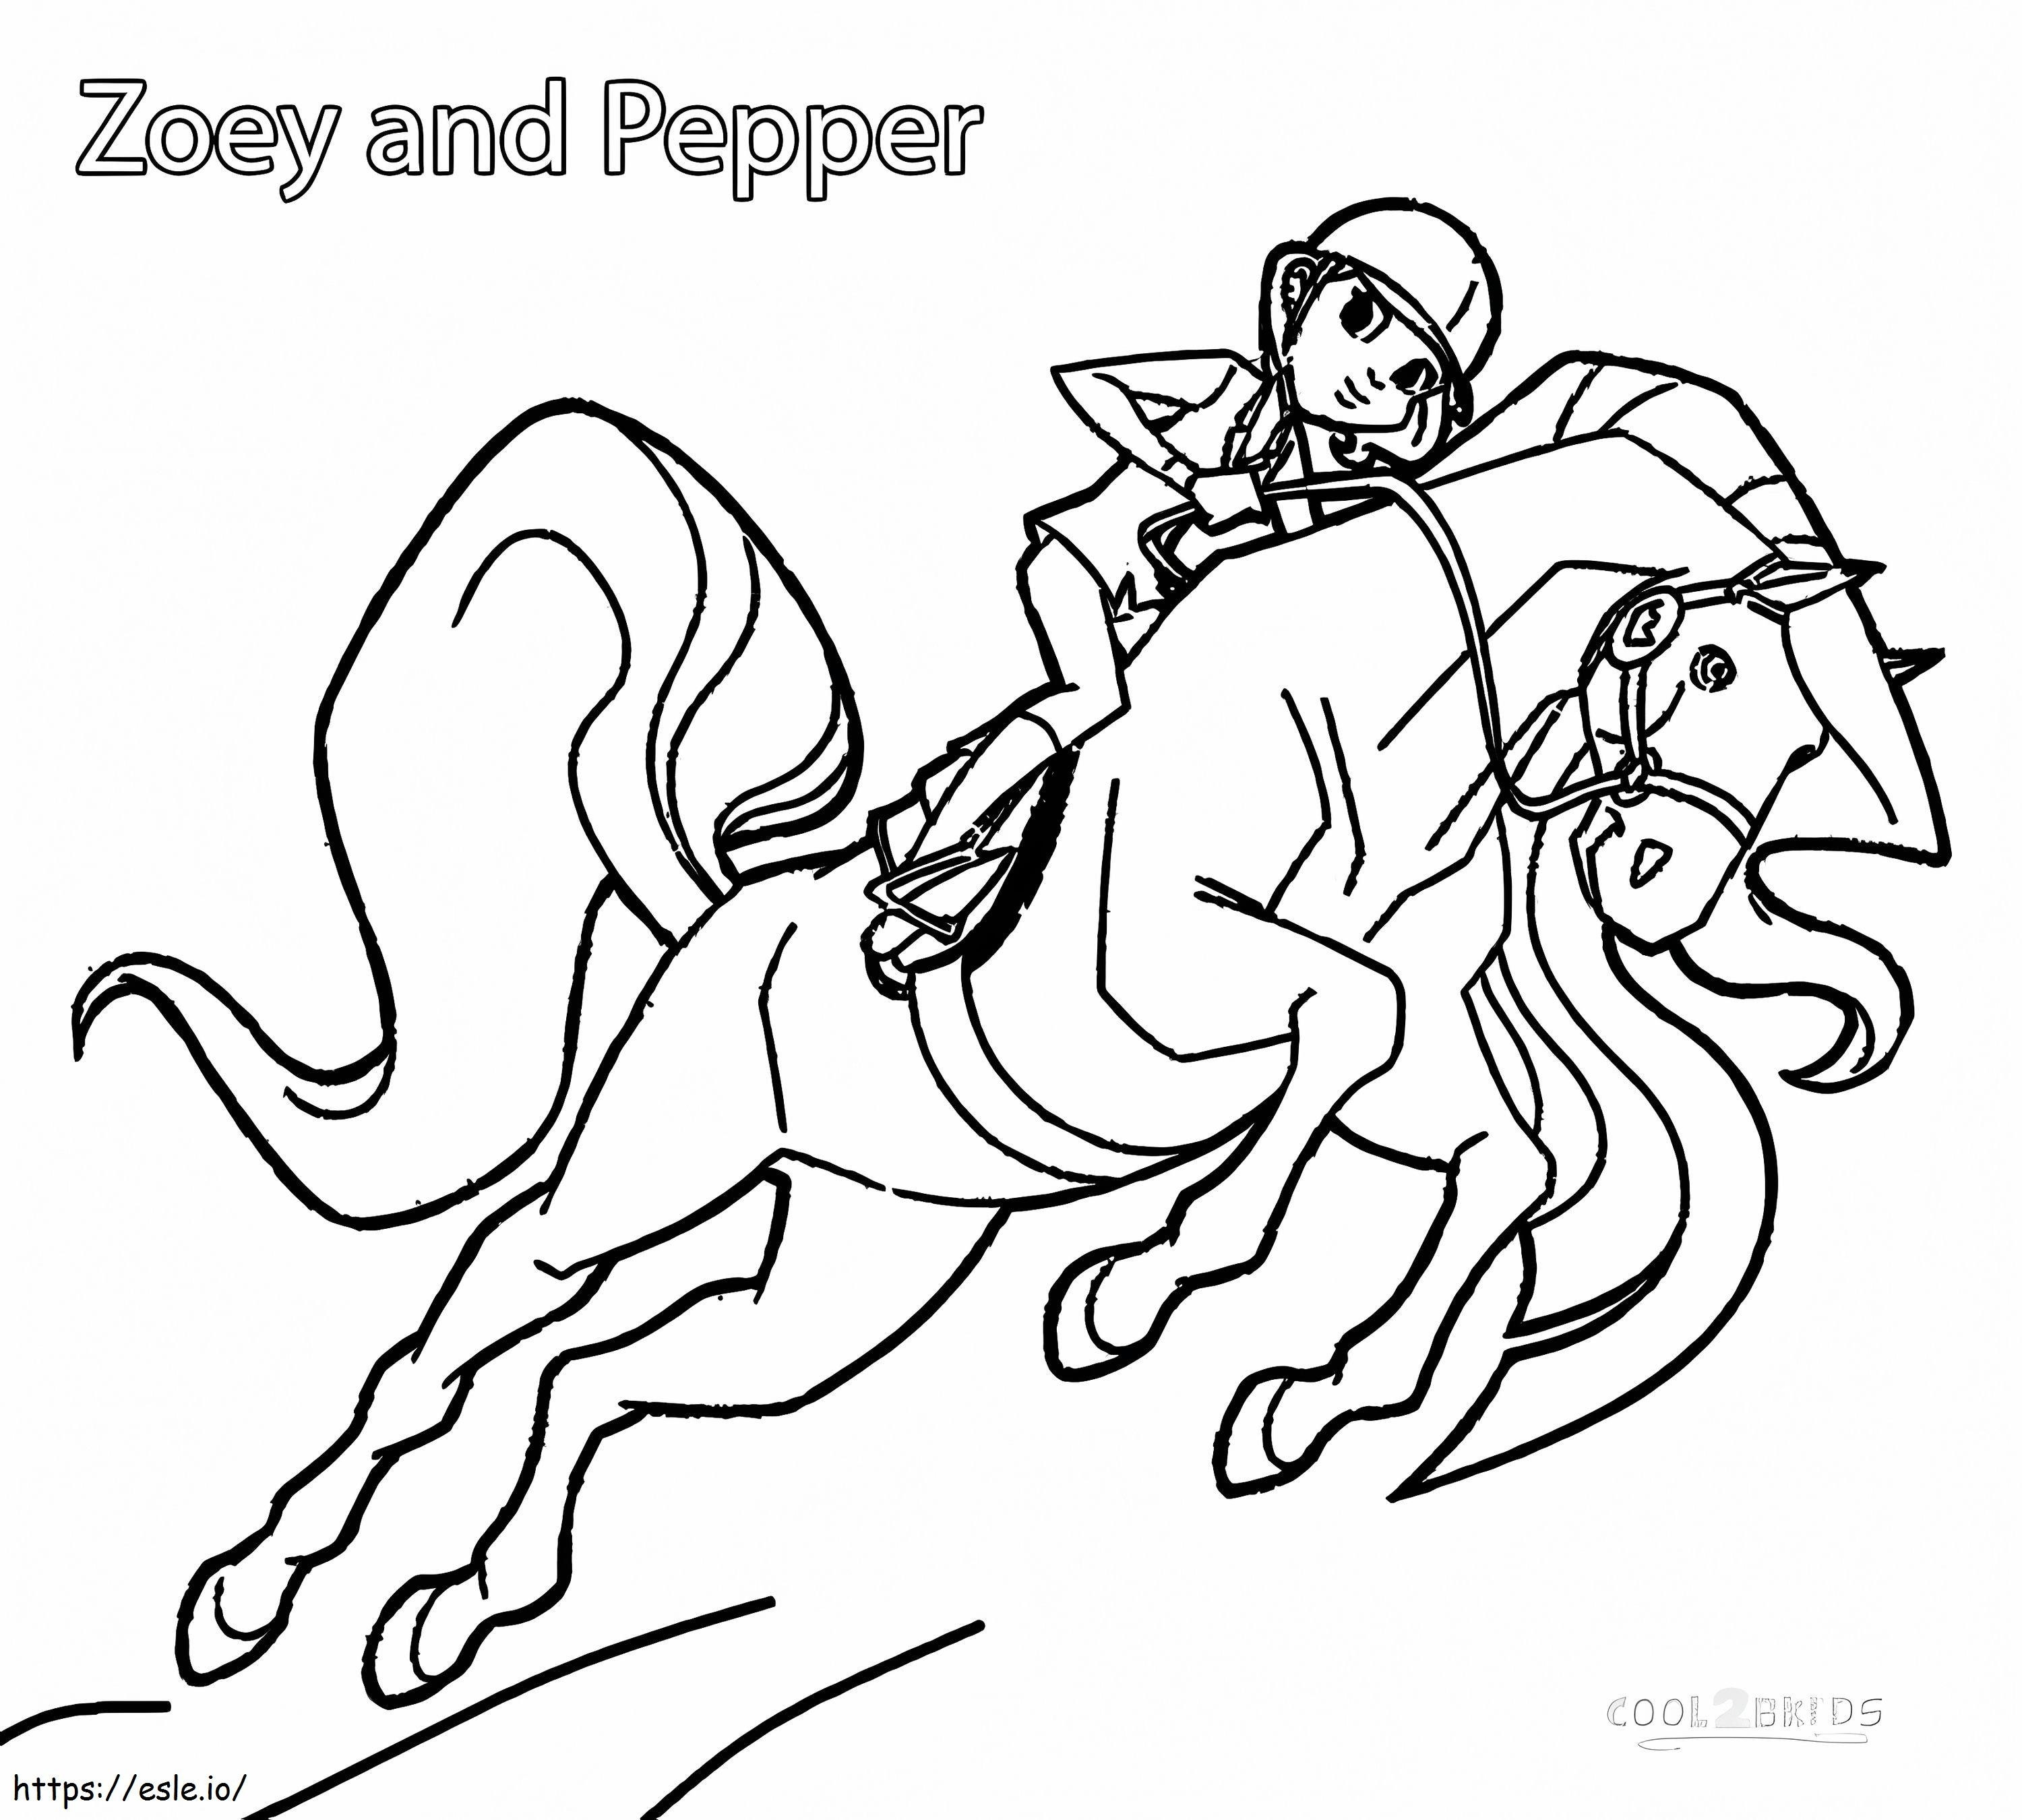 Zoey și Pepper din Horseland de colorat